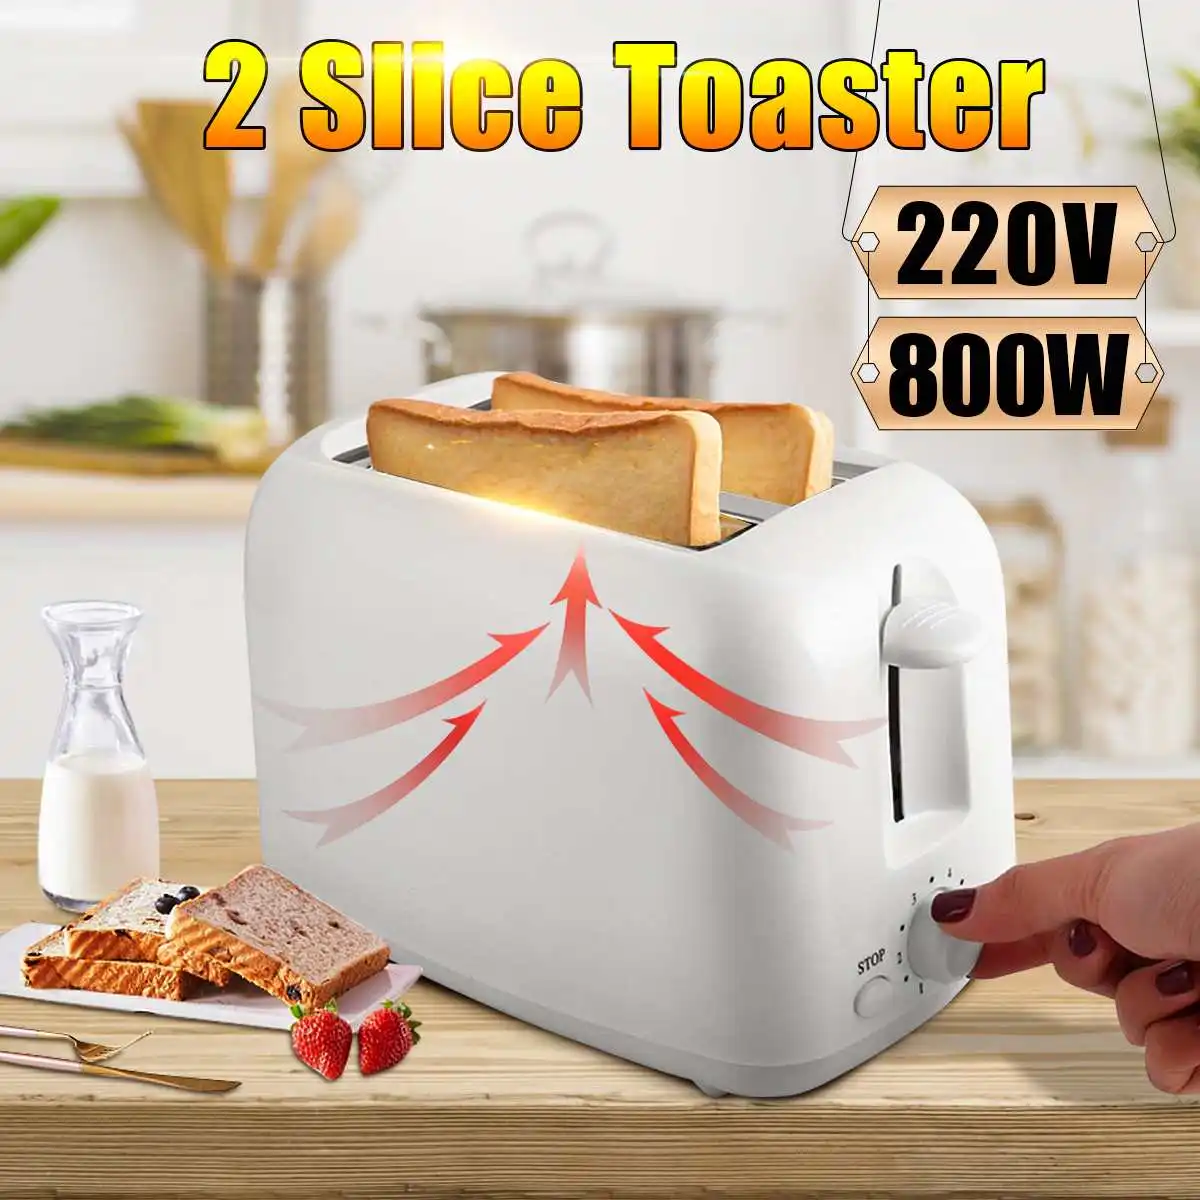 2-секционированный тостер 220 V/800 W тостер хлеба сэндвич дома Кухня прибор Пособия по кулинарии жарить хлеб для того, чтобы сделать завтрак хлеб чайник штепсельная вилка европейского стандарта